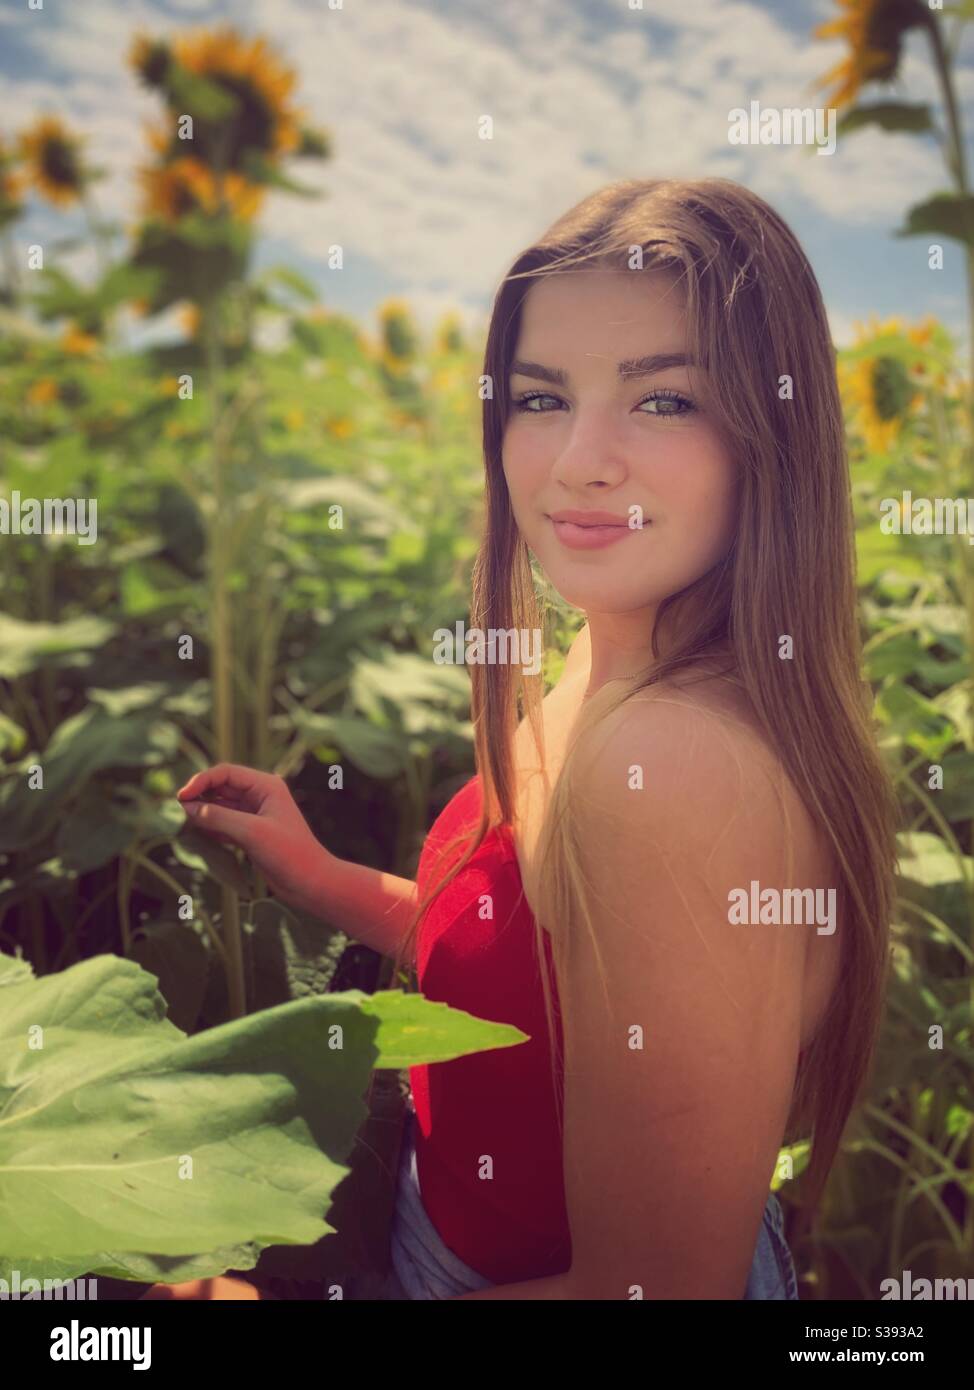 Junge Teenager-Mädchen posiert in einem Sonnenblumen-Patch. Stockfoto